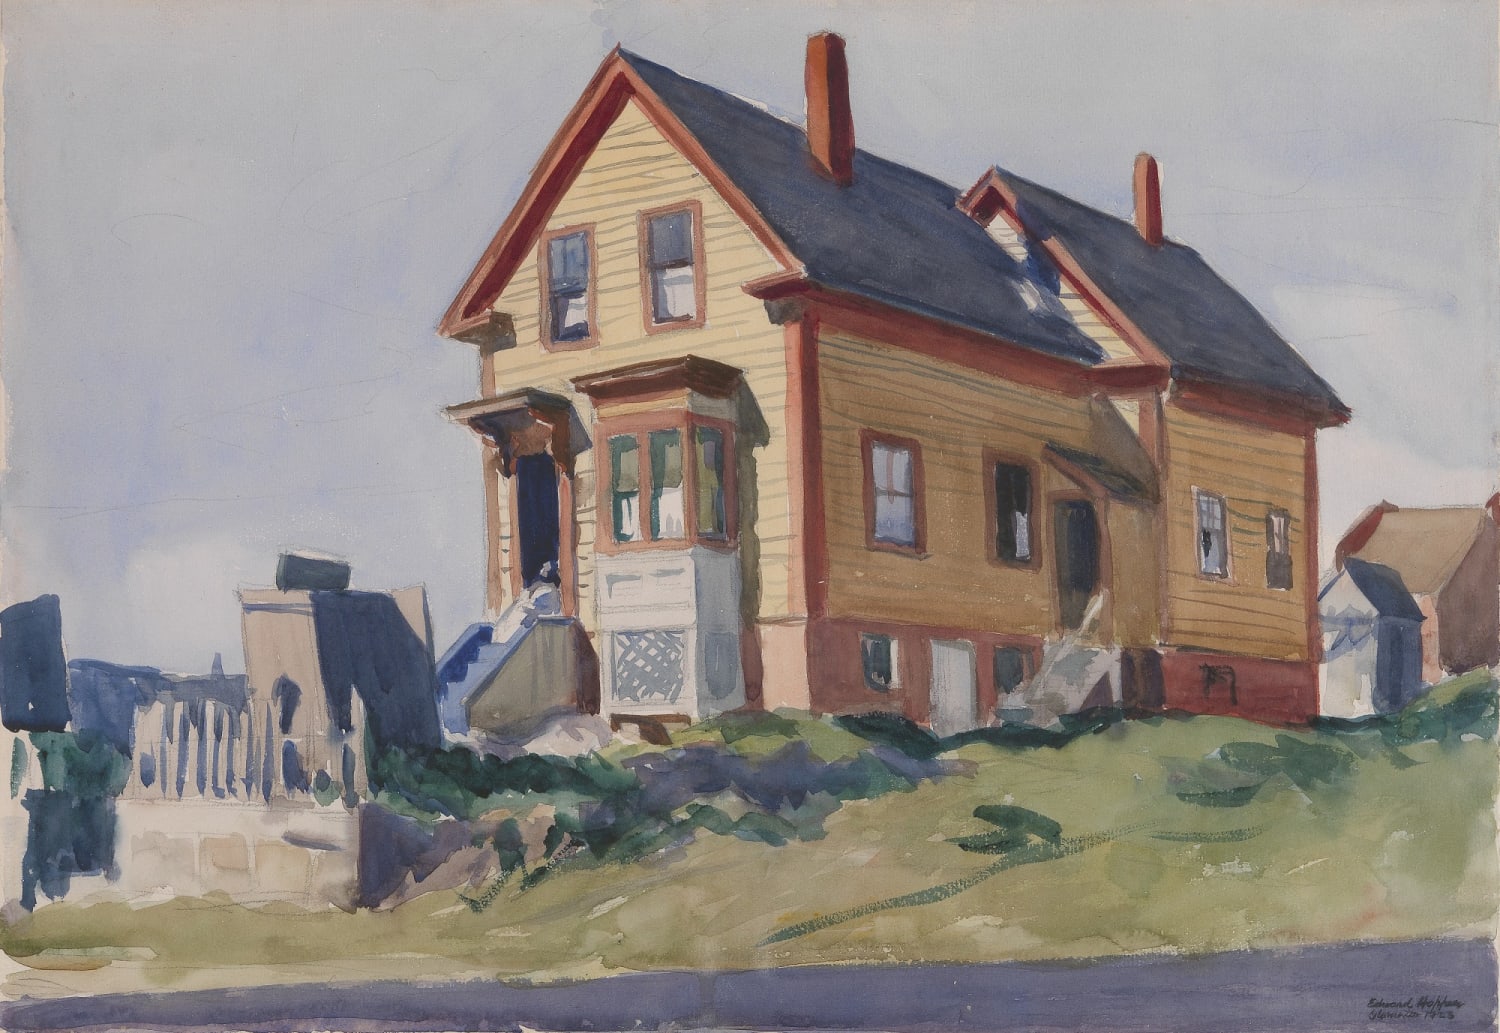 House in Italian Quarter, Edward Hopper, 1923